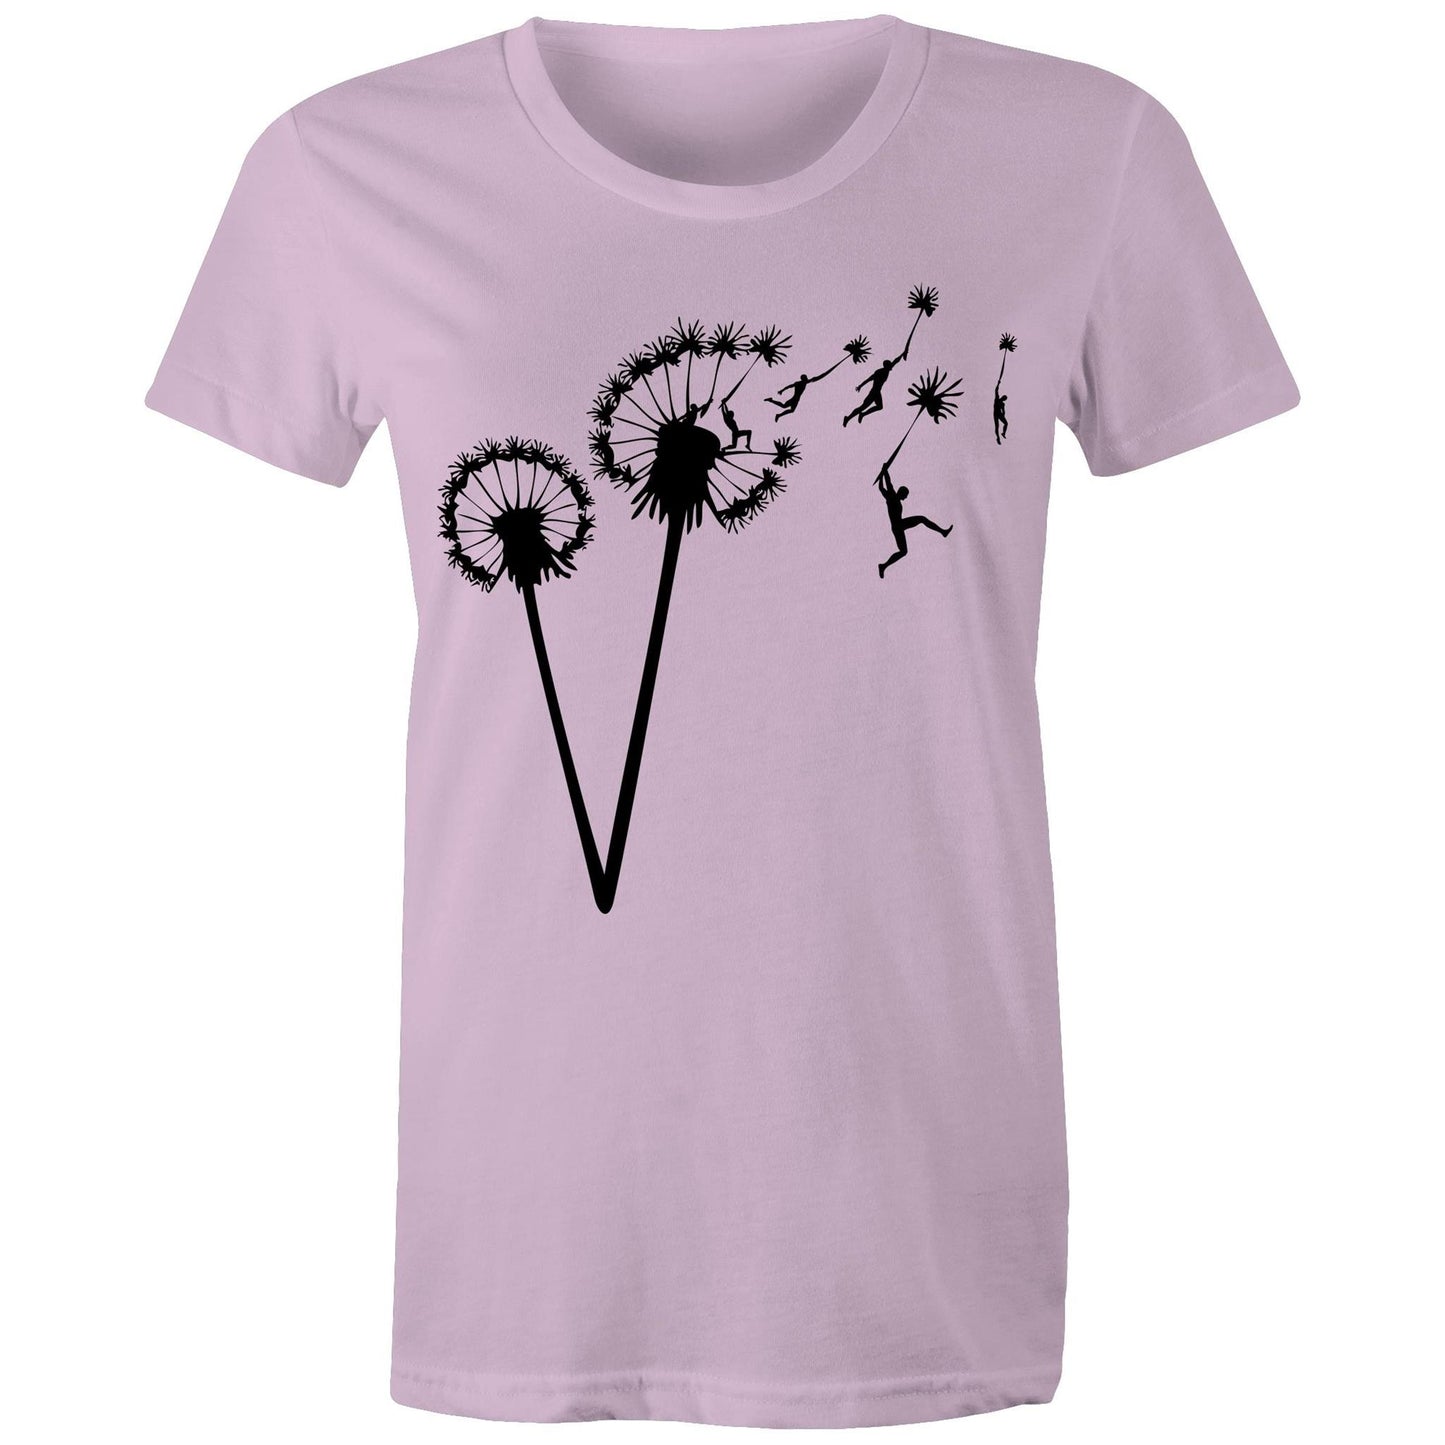 Dandelion People Flight - Women's T-Shirt